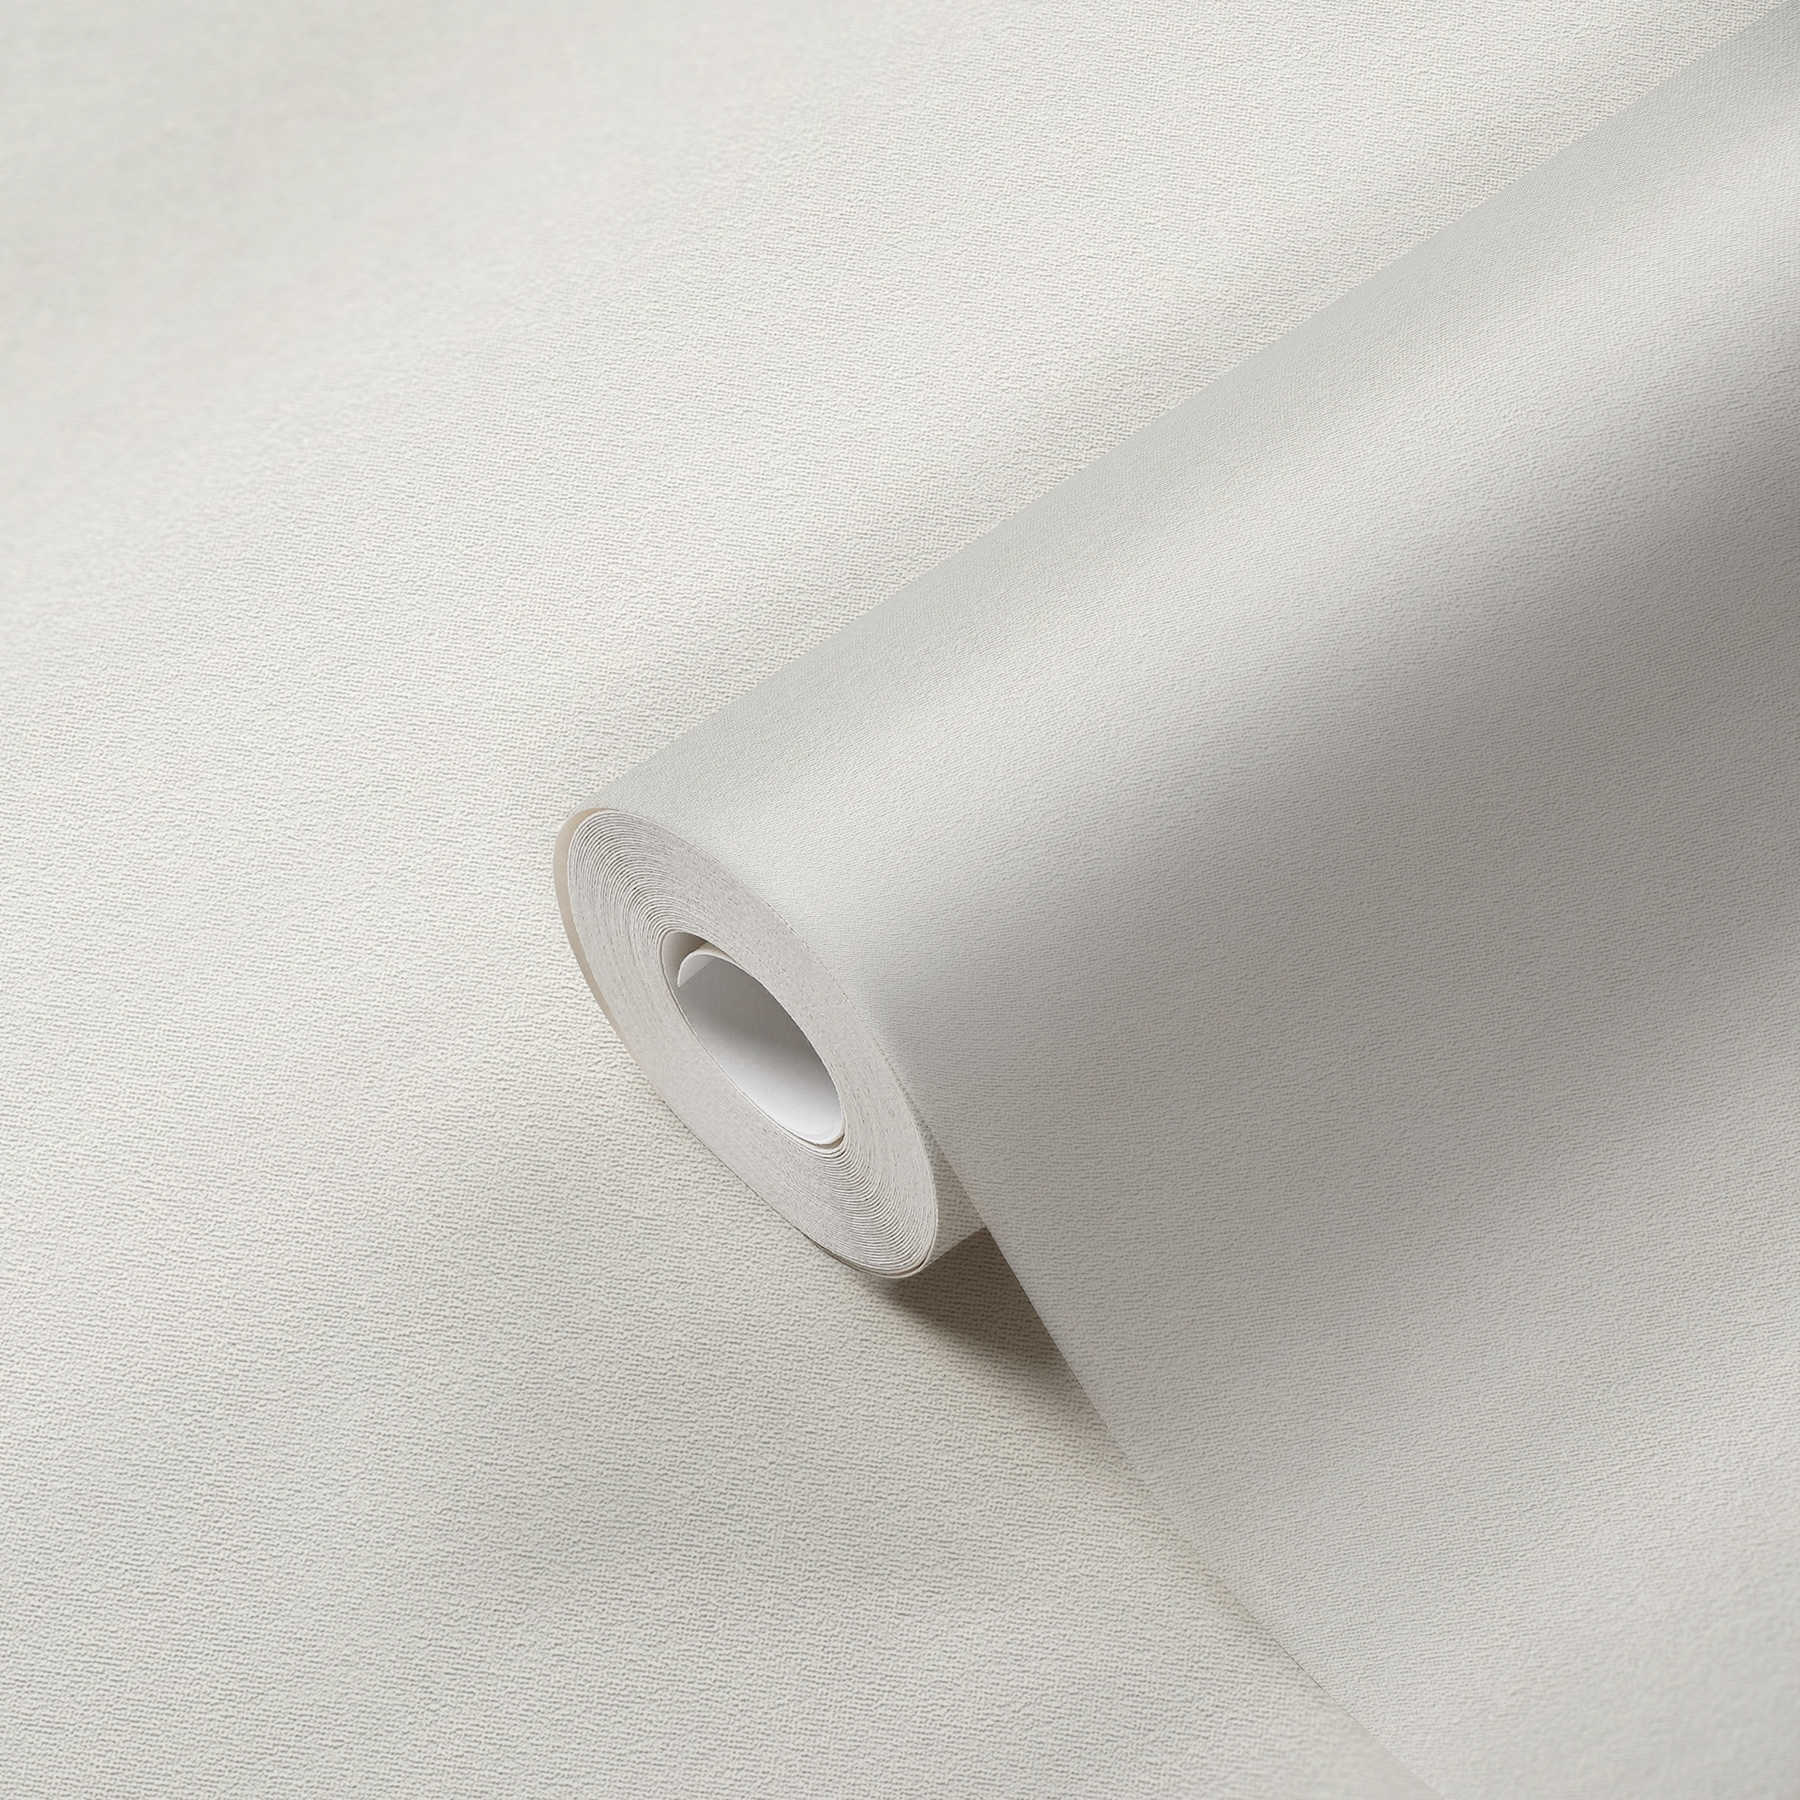             Papel pintado no tejido blanco liso mate con estructura de espuma
        